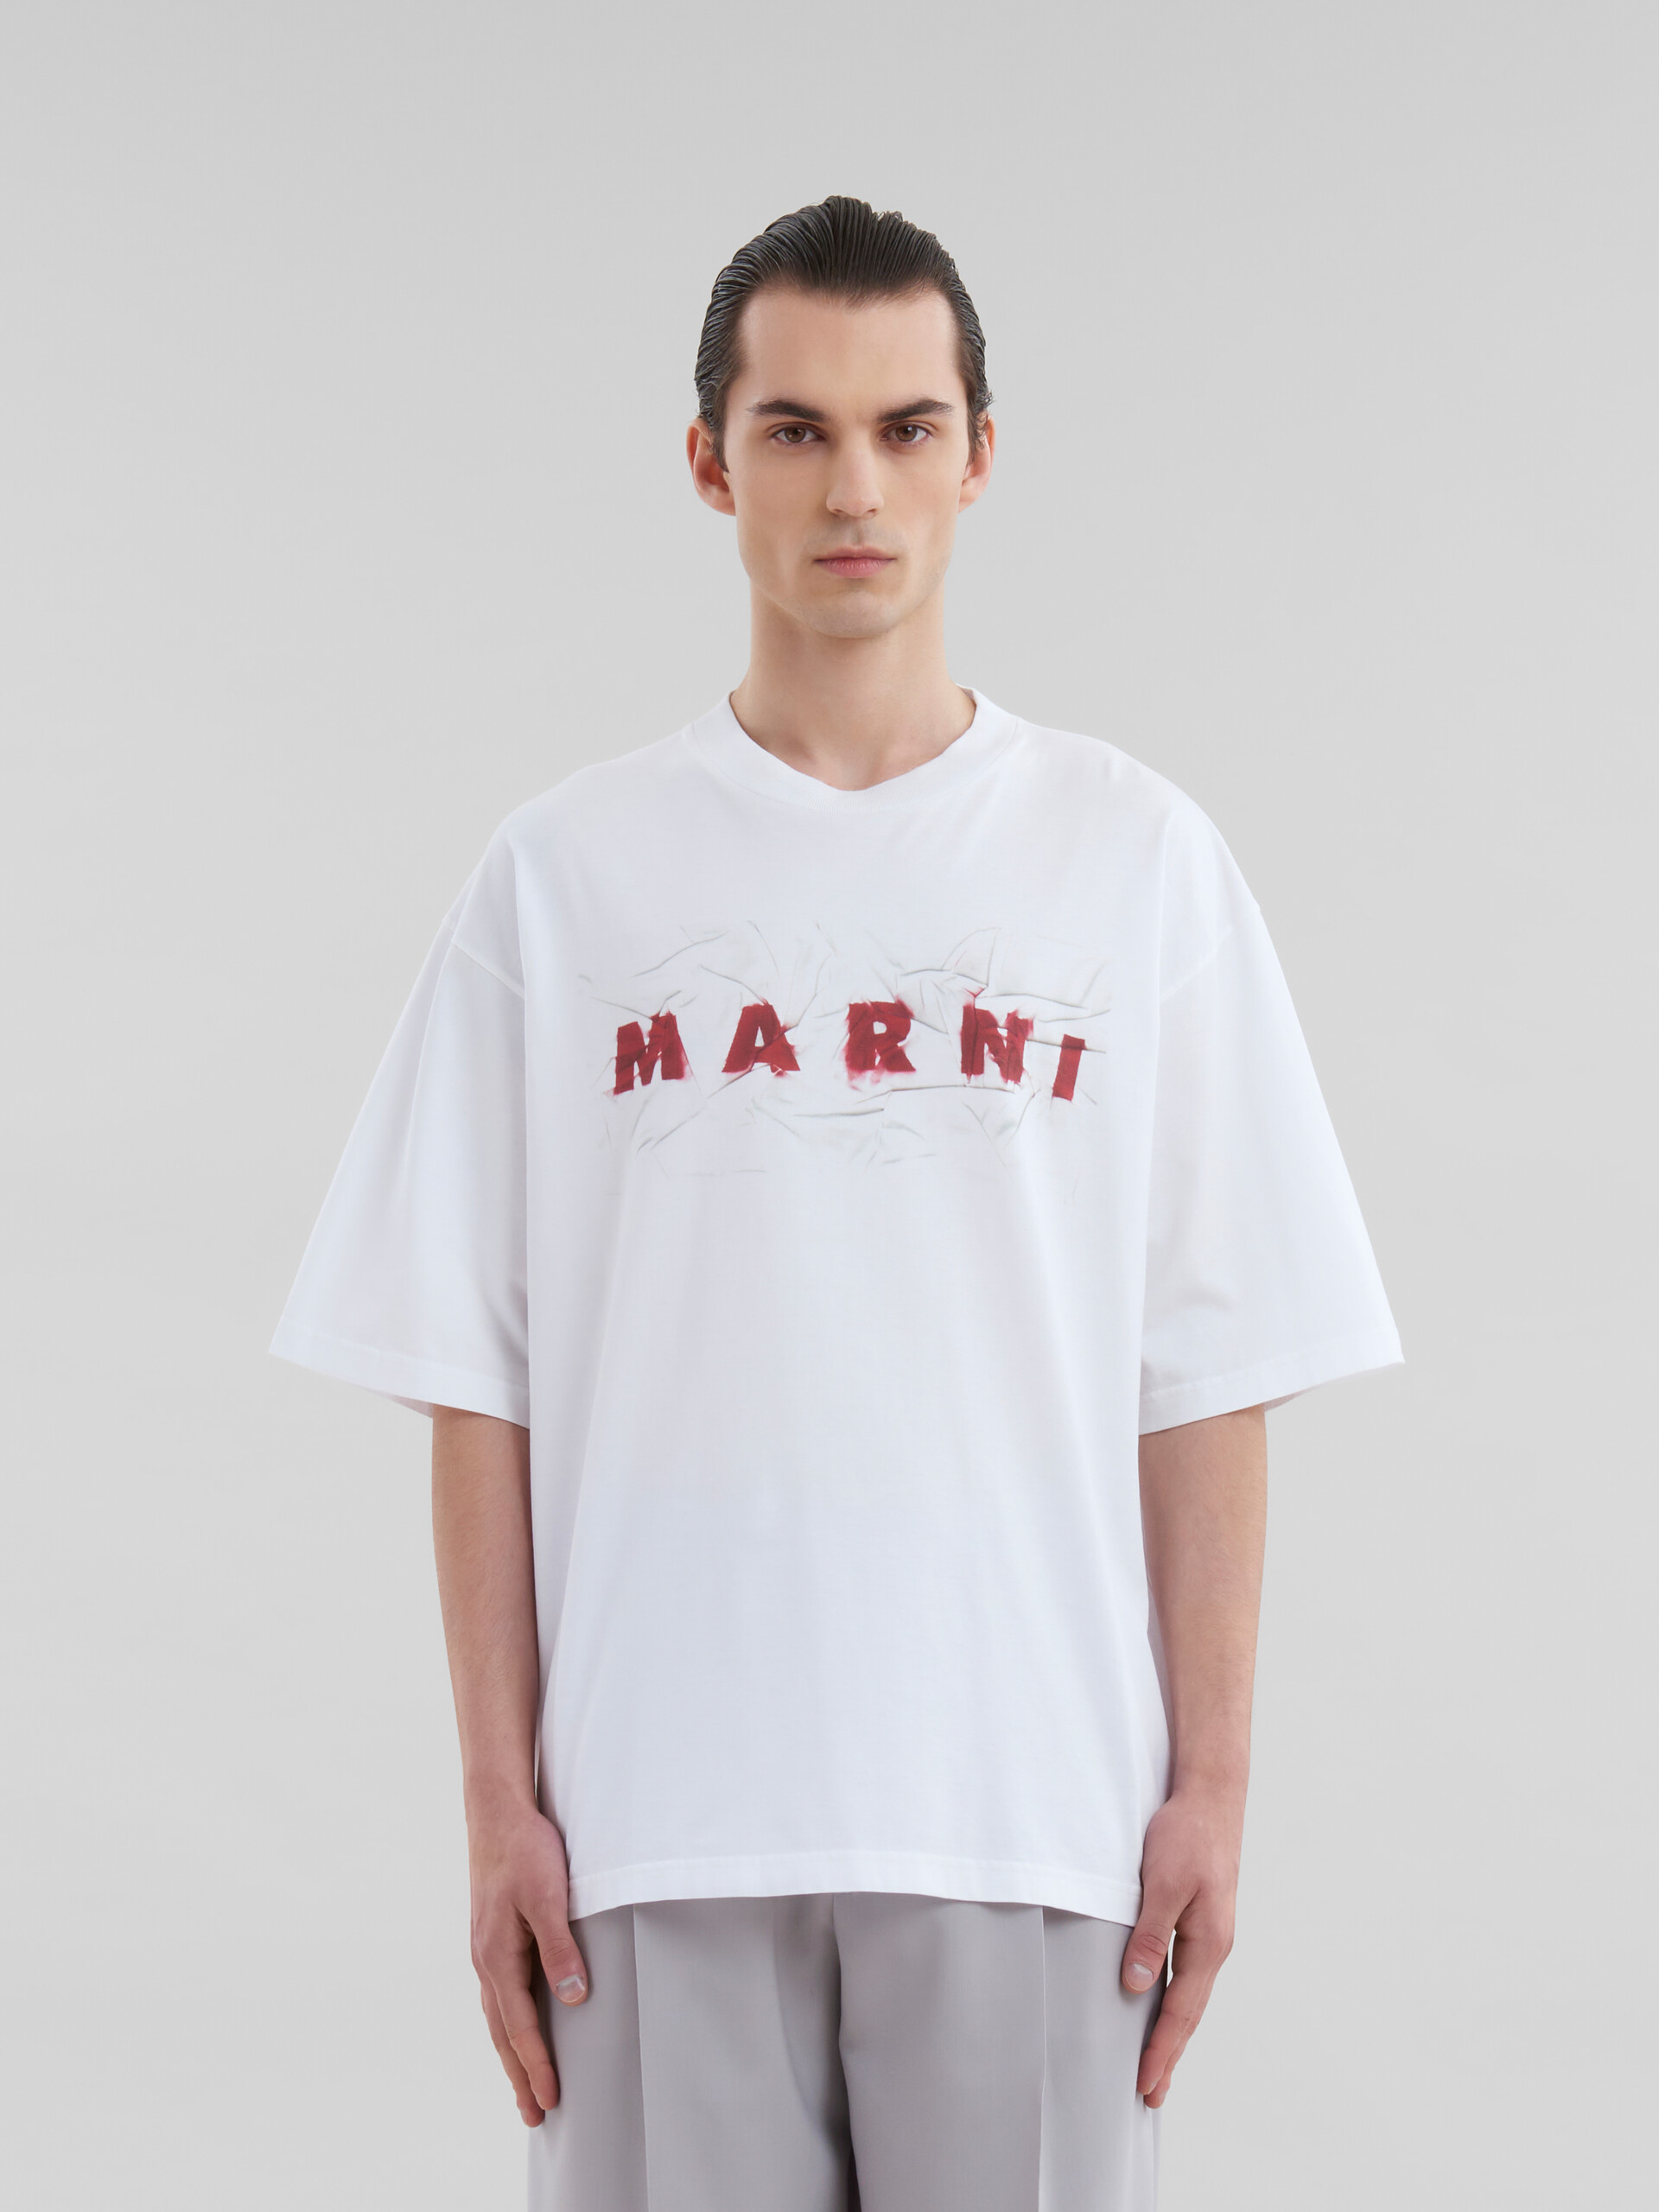 ホワイト オーガニックコットン製 Tシャツ、リンクル マルニロゴ - Tシャツ - Image 2